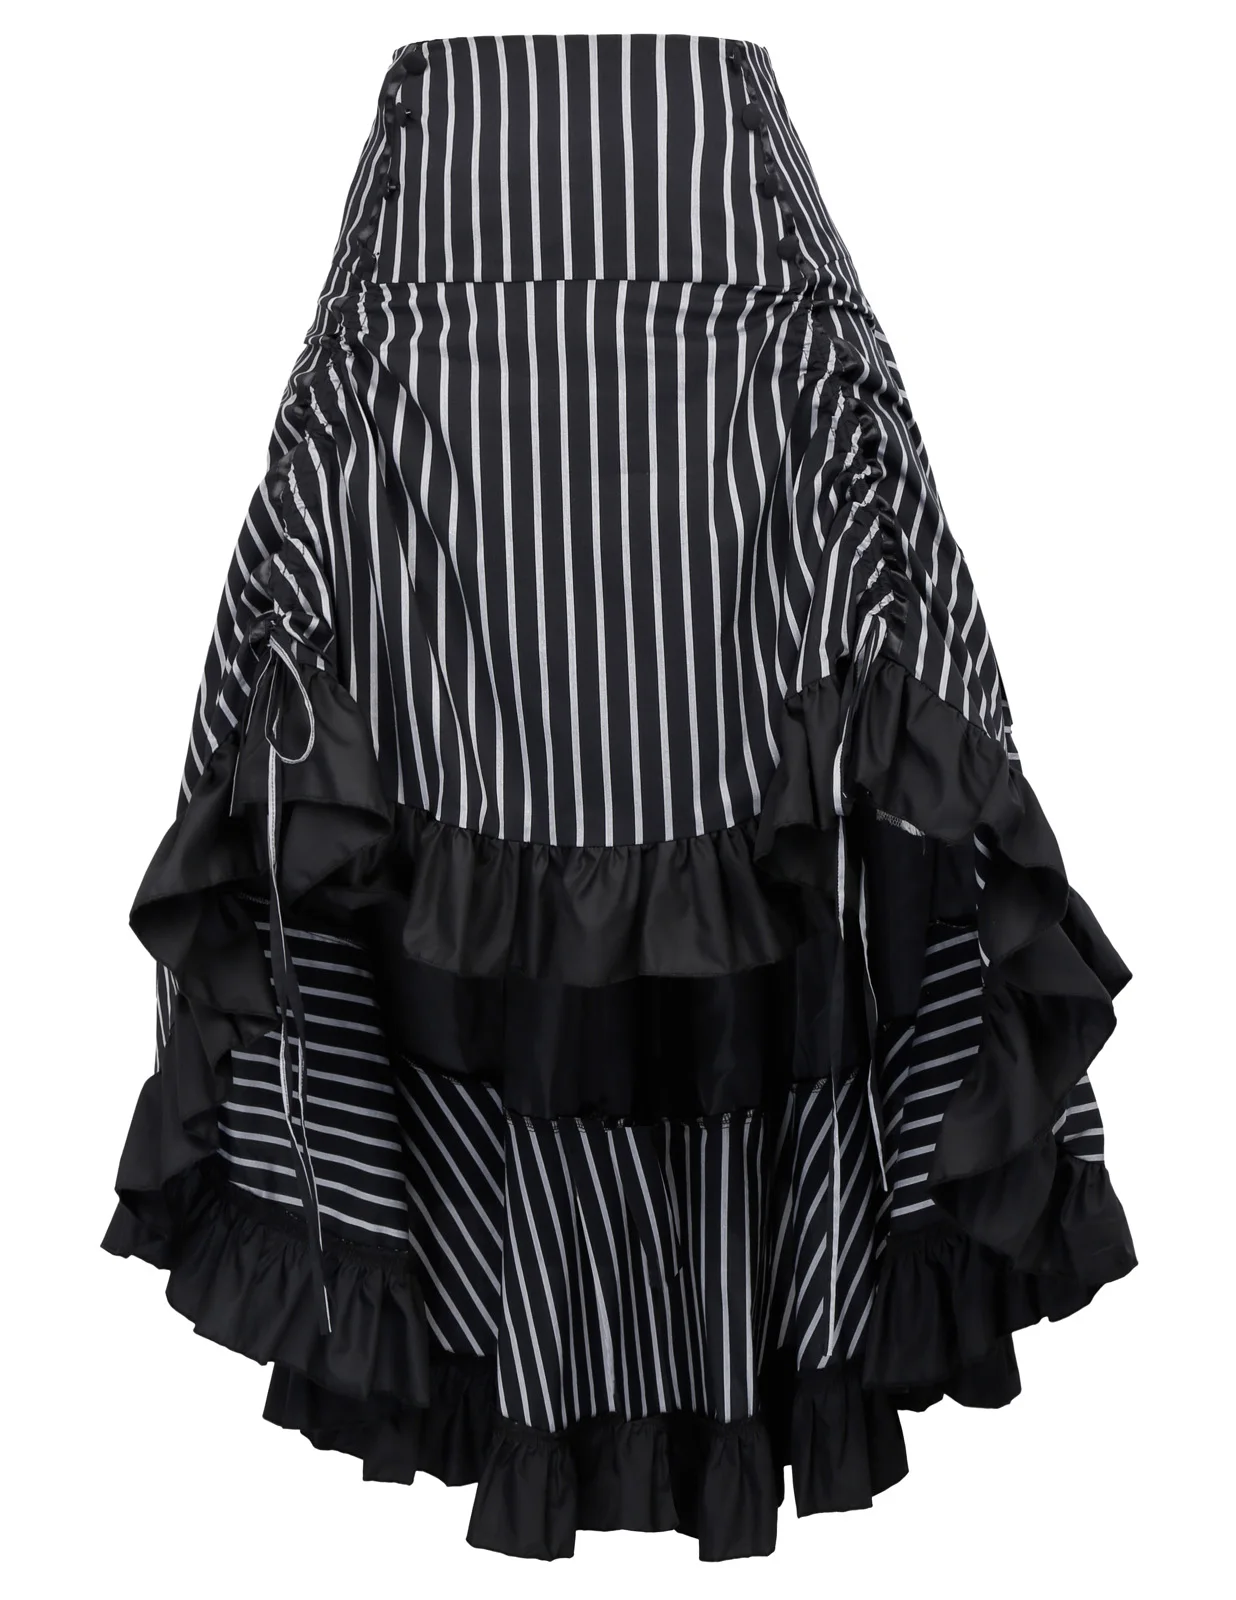 Винтажная юбка в стиле стимпанк, Викторианский готический стиль, высокая низкая юбка с кружевным подолом, сексуальная Осенняя Женская юбка в полоску, костюм - Цвет: Black